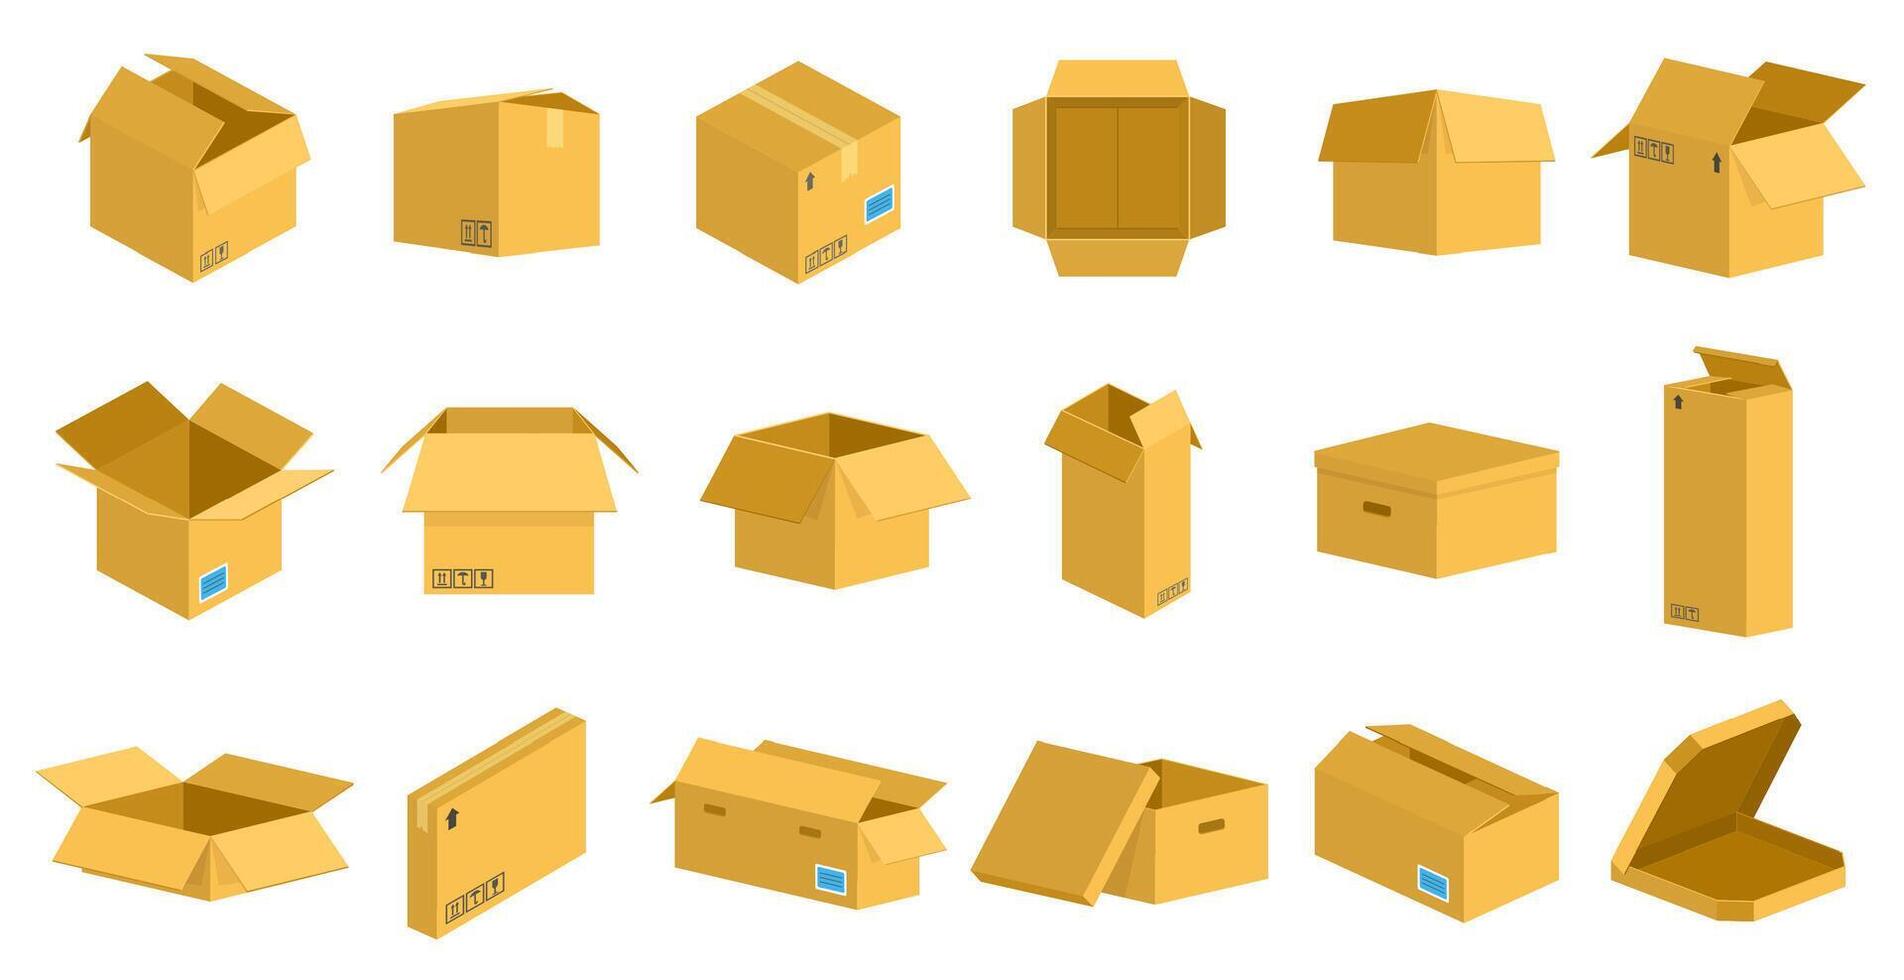 almacenamiento cartulina cajas embalaje entrega cartulina caja, marrón postal paquete o empaquetar paquete, abierto y cerrado reciclaje cajas vector ilustración conjunto